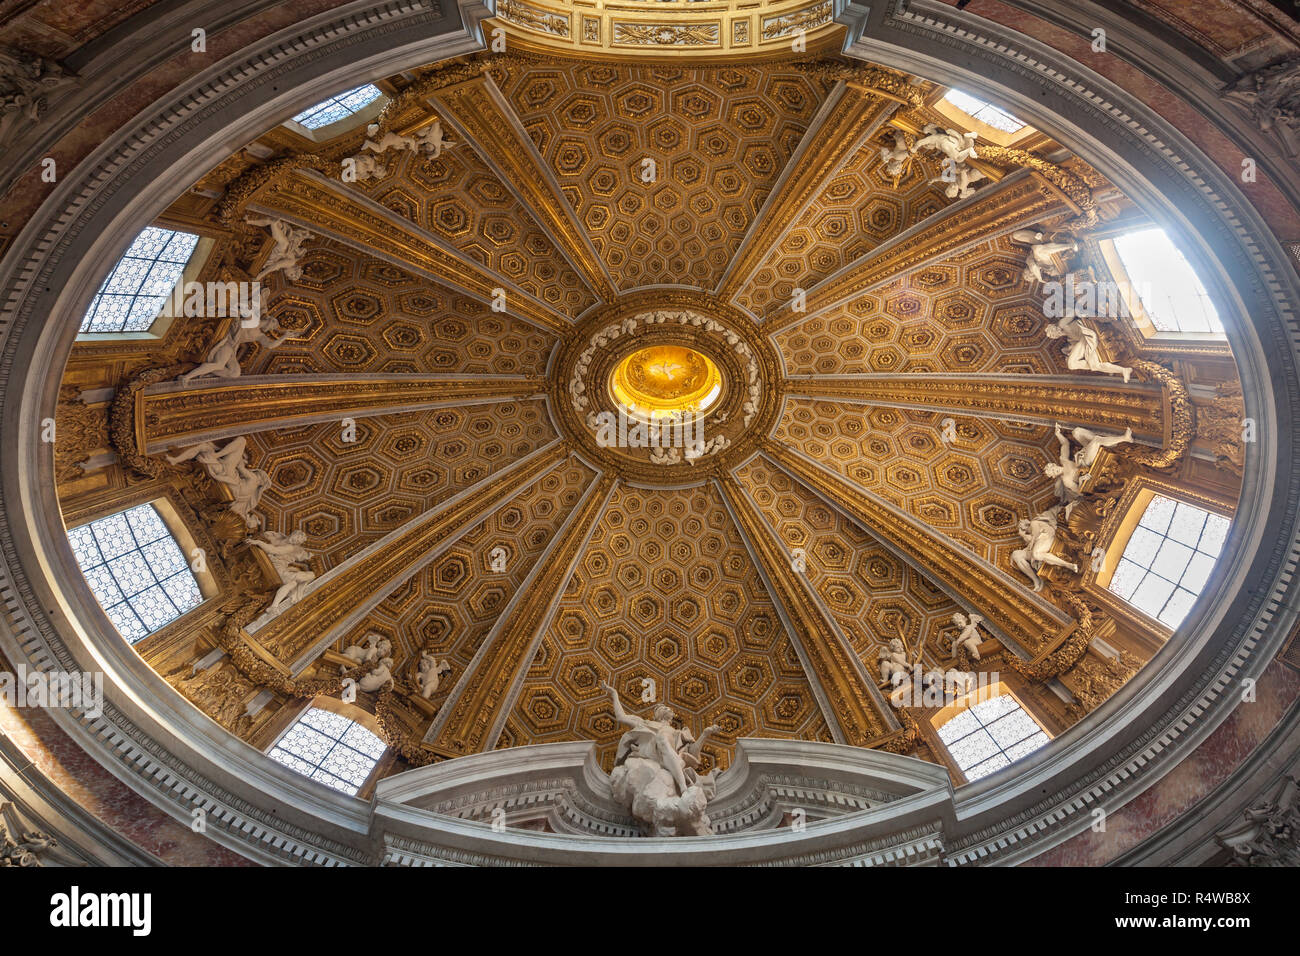 Sant'Andrea al Quirinale, Rome, Italy Stock Photo